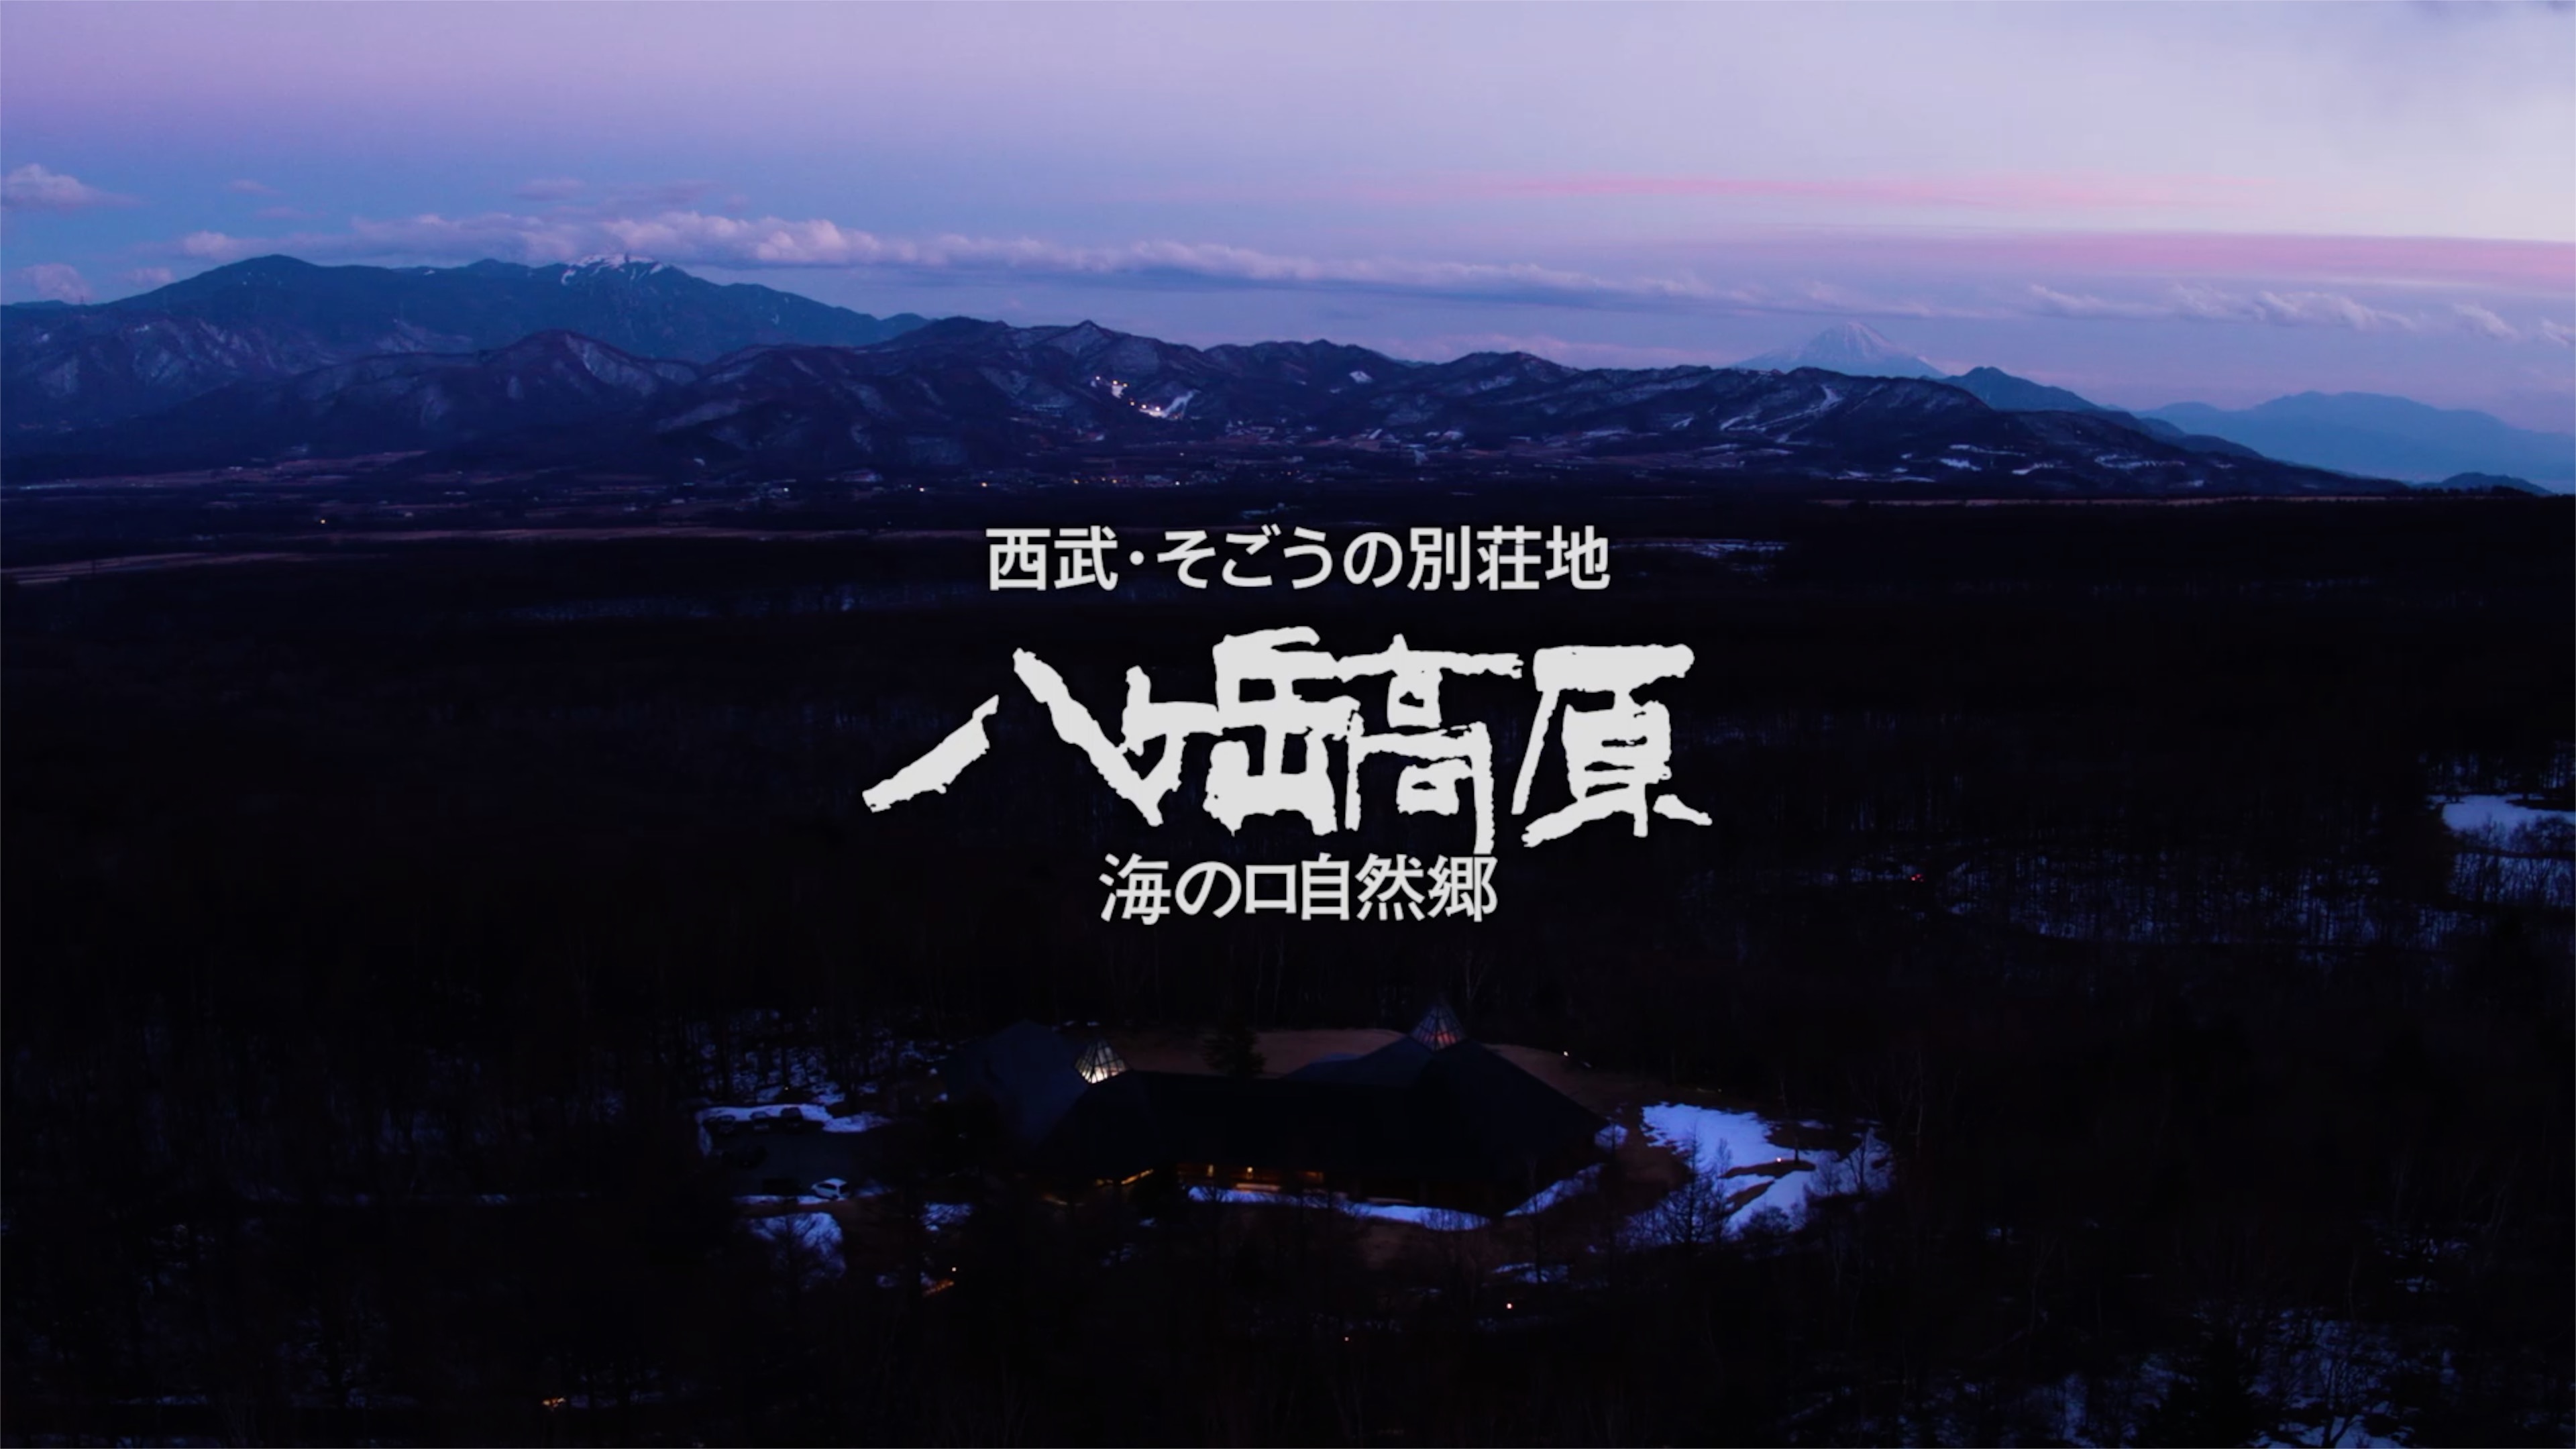 【webCM】 西武そごうの別荘地 八ヶ岳 海の口自然郷